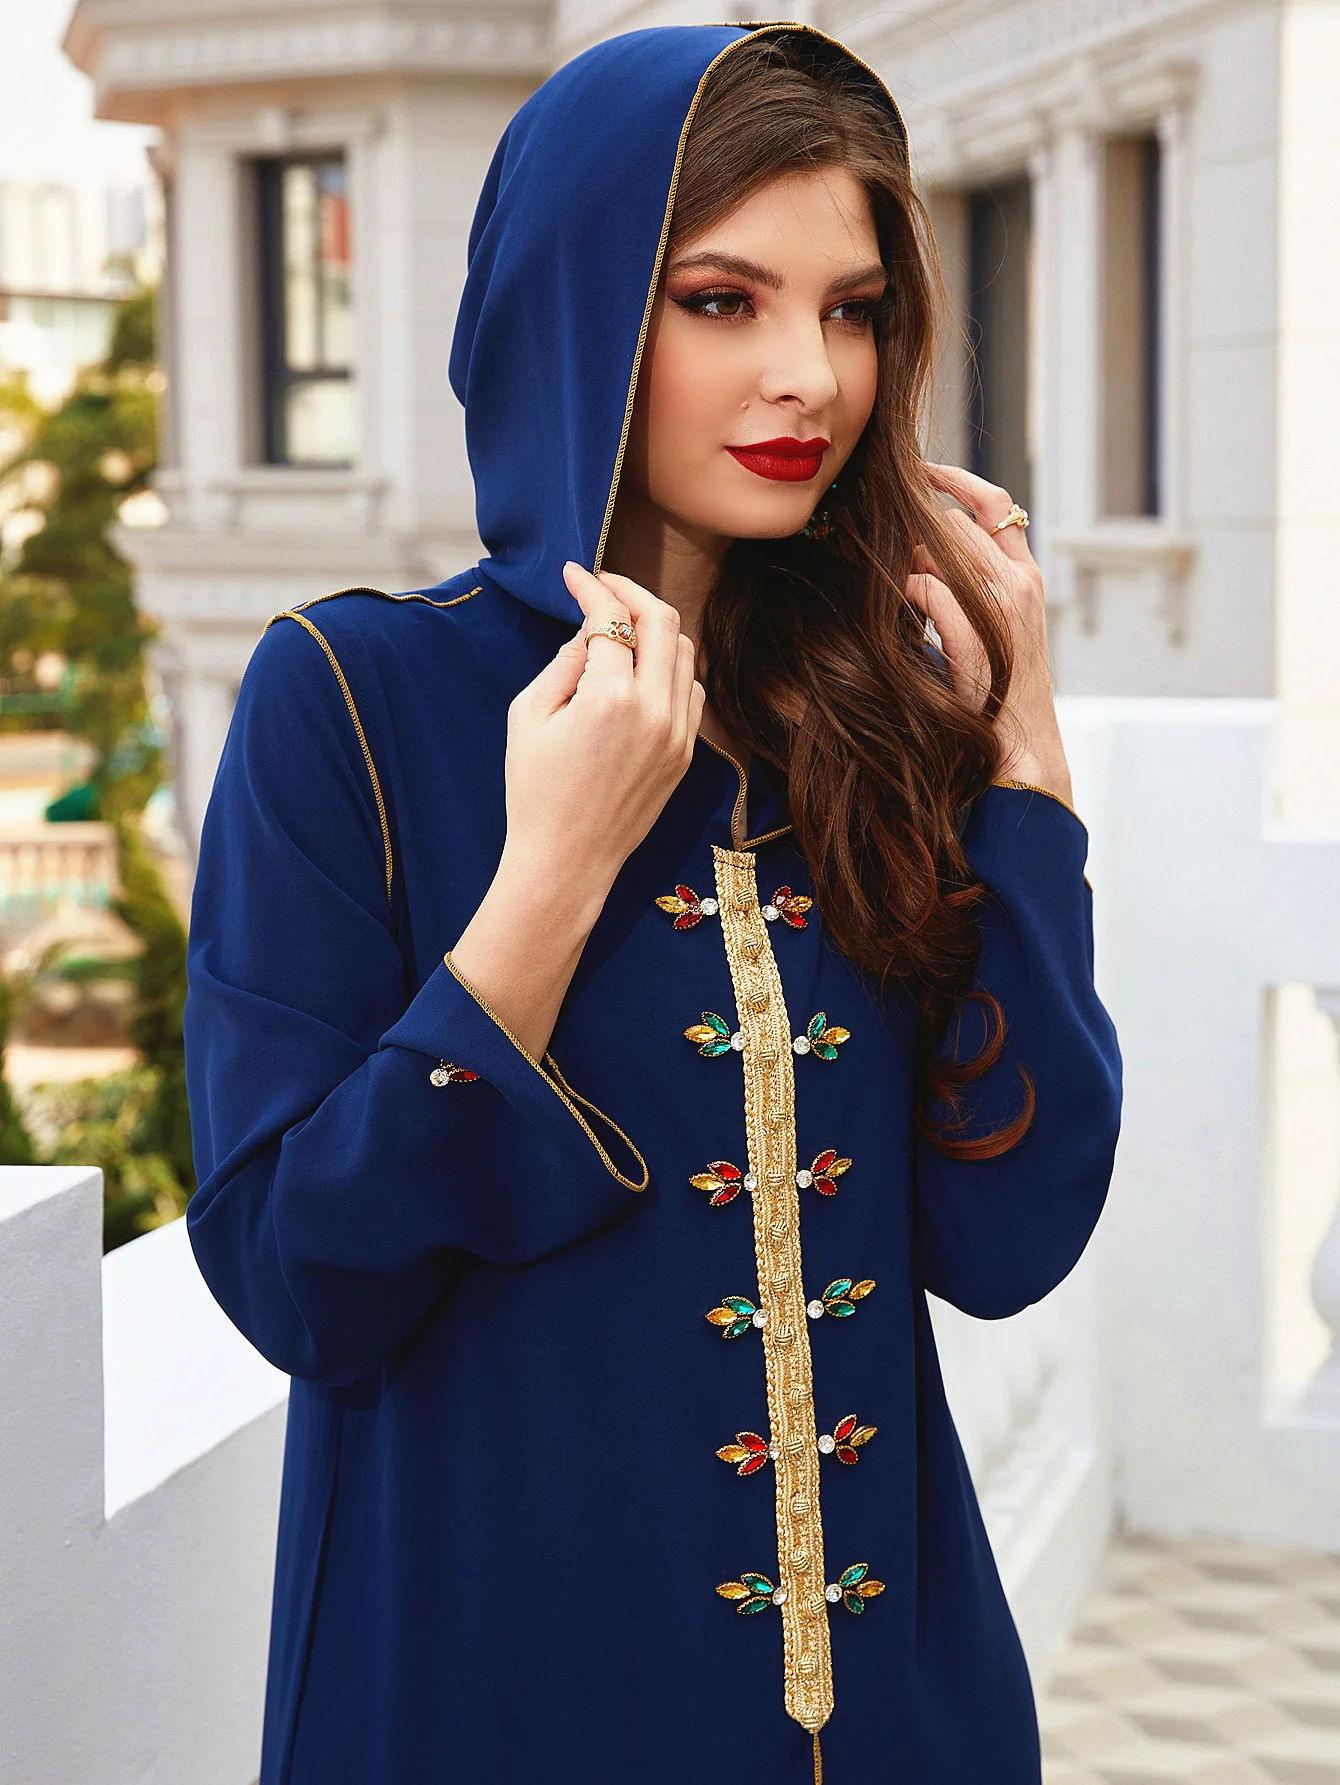 Халат с капюшоном и бриллиантами, абайя, мусульманский Дубай, турецкое женское модное вечернее платье, сверхдлинный стильный и элегантный к...